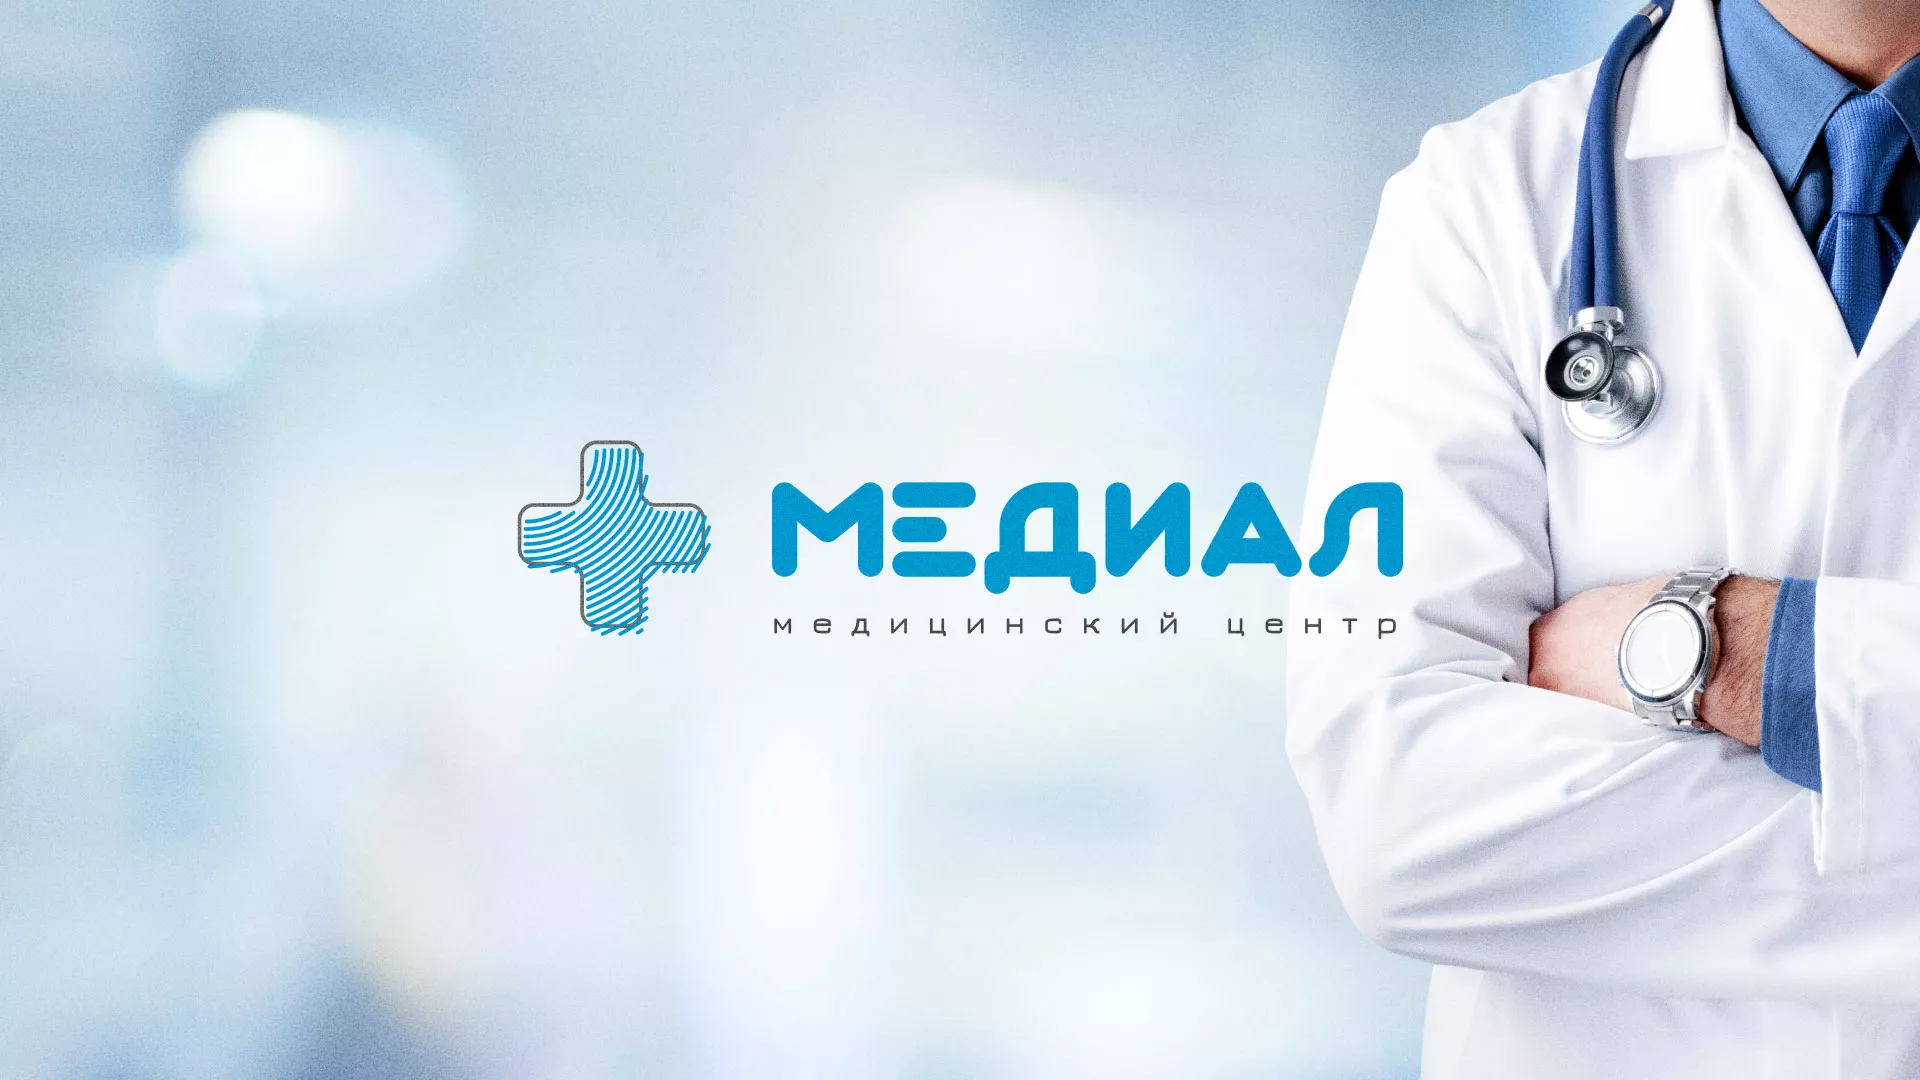 Создание сайта для медицинского центра «Медиал» в Камешково